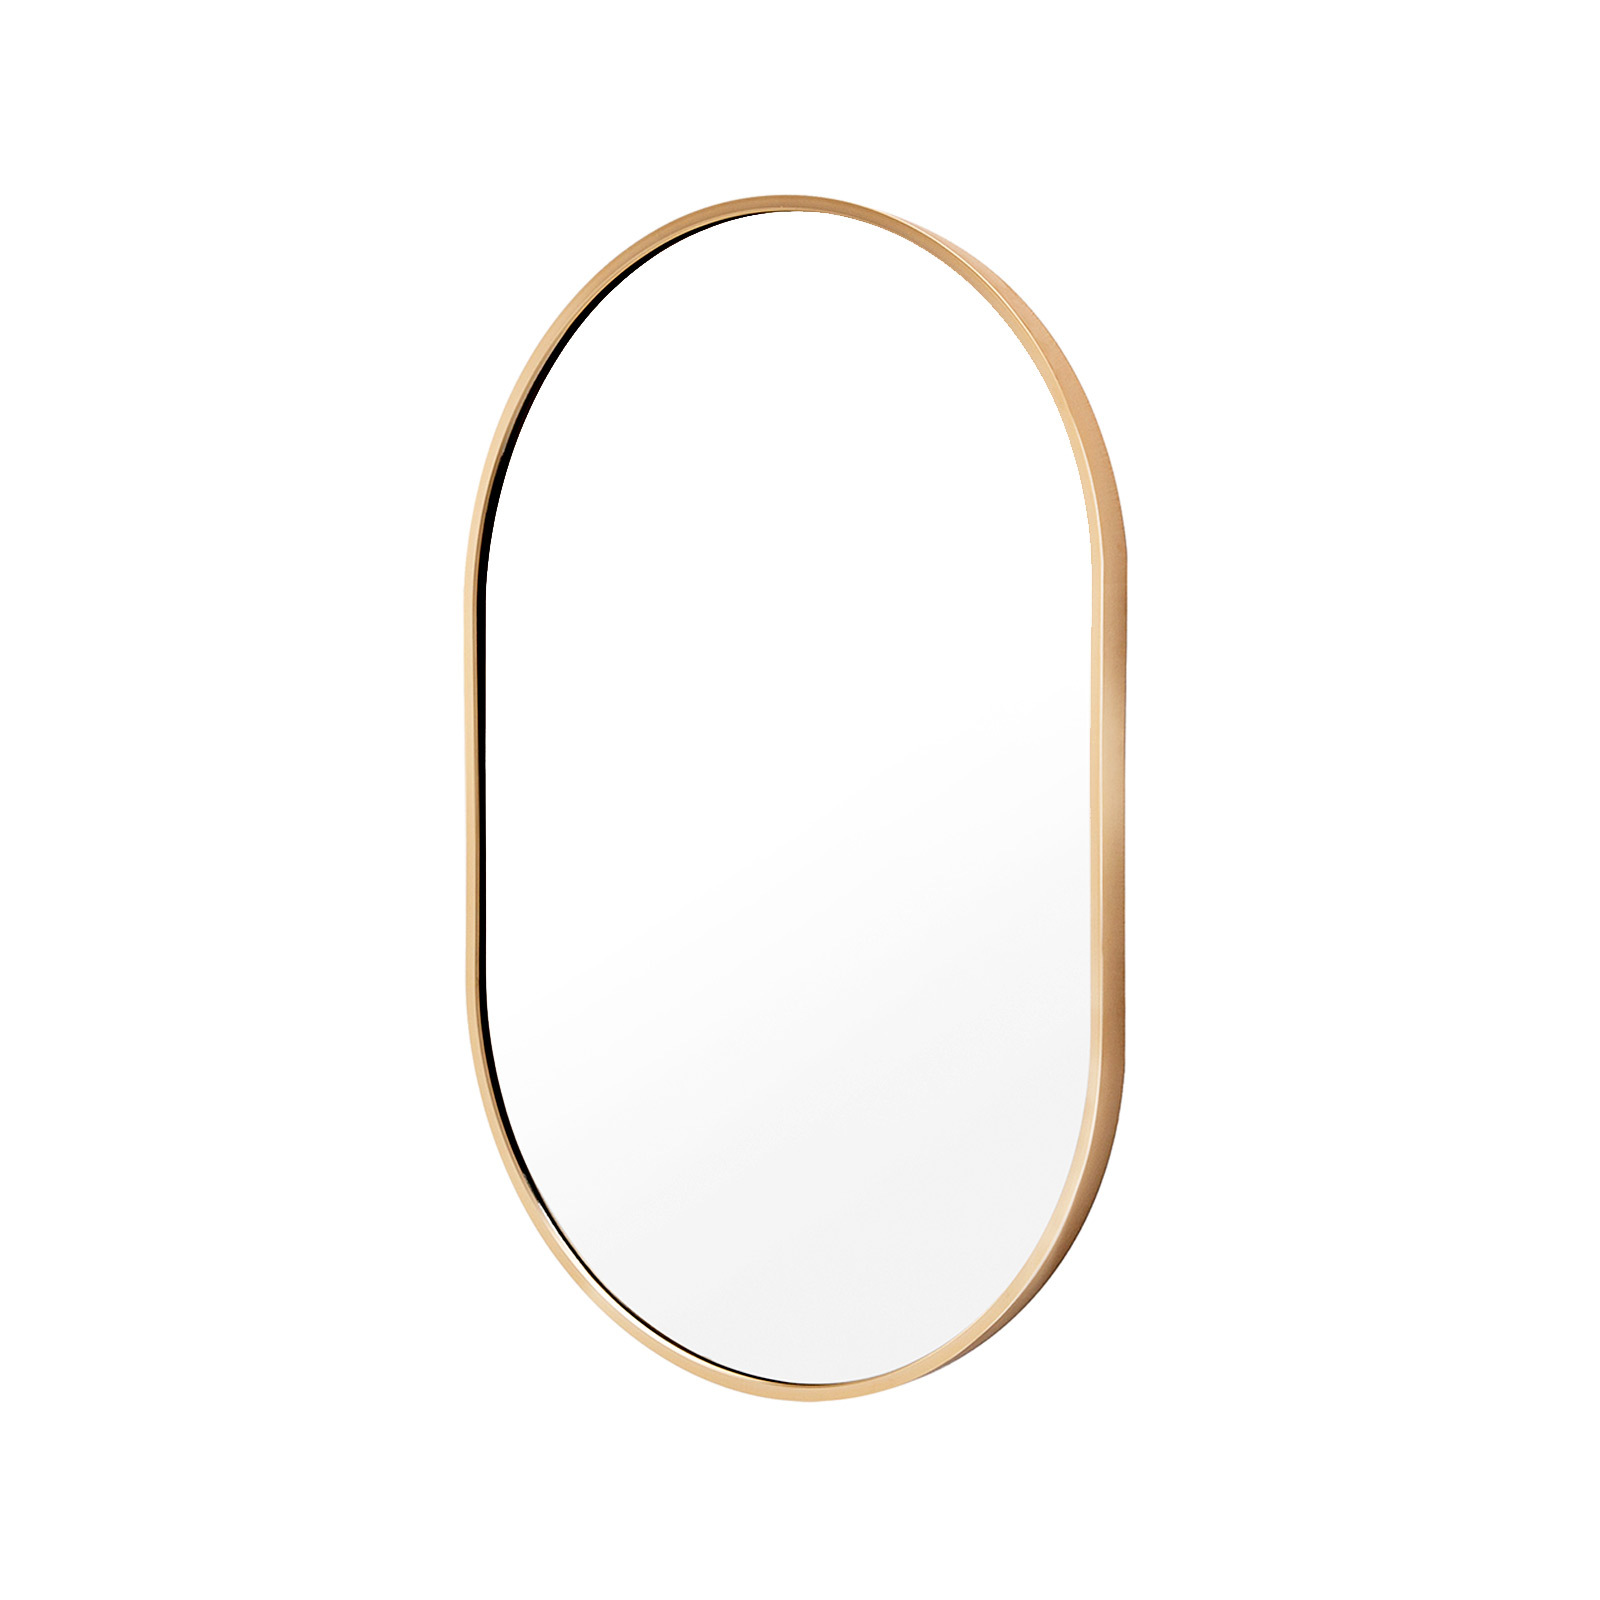 50x75cm Wall Mirror Oval Bathroom - GOLD